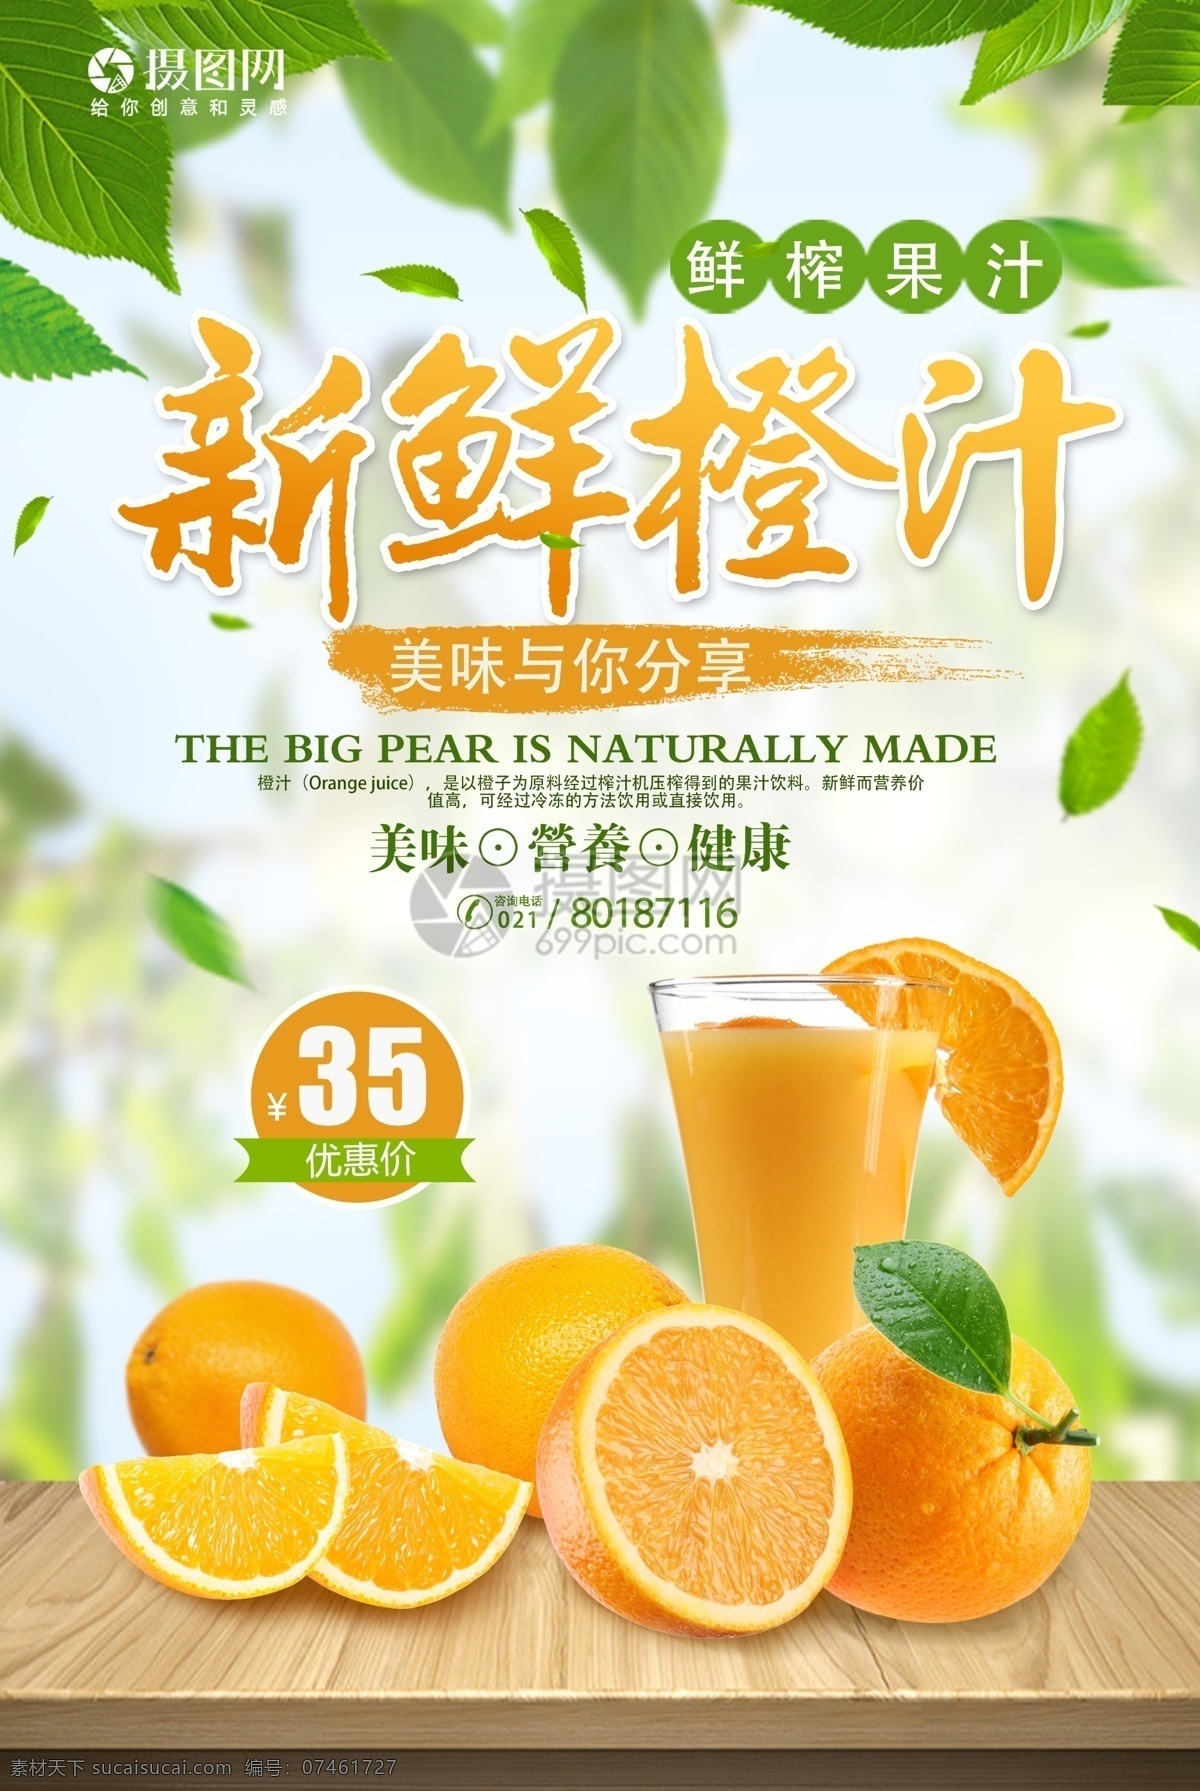 新鲜 橙汁 促销 海报 橙汁海报 果汁海报 鲜榨果汁 现榨果汁 果粒 橙色 橙汁促销 促销海报